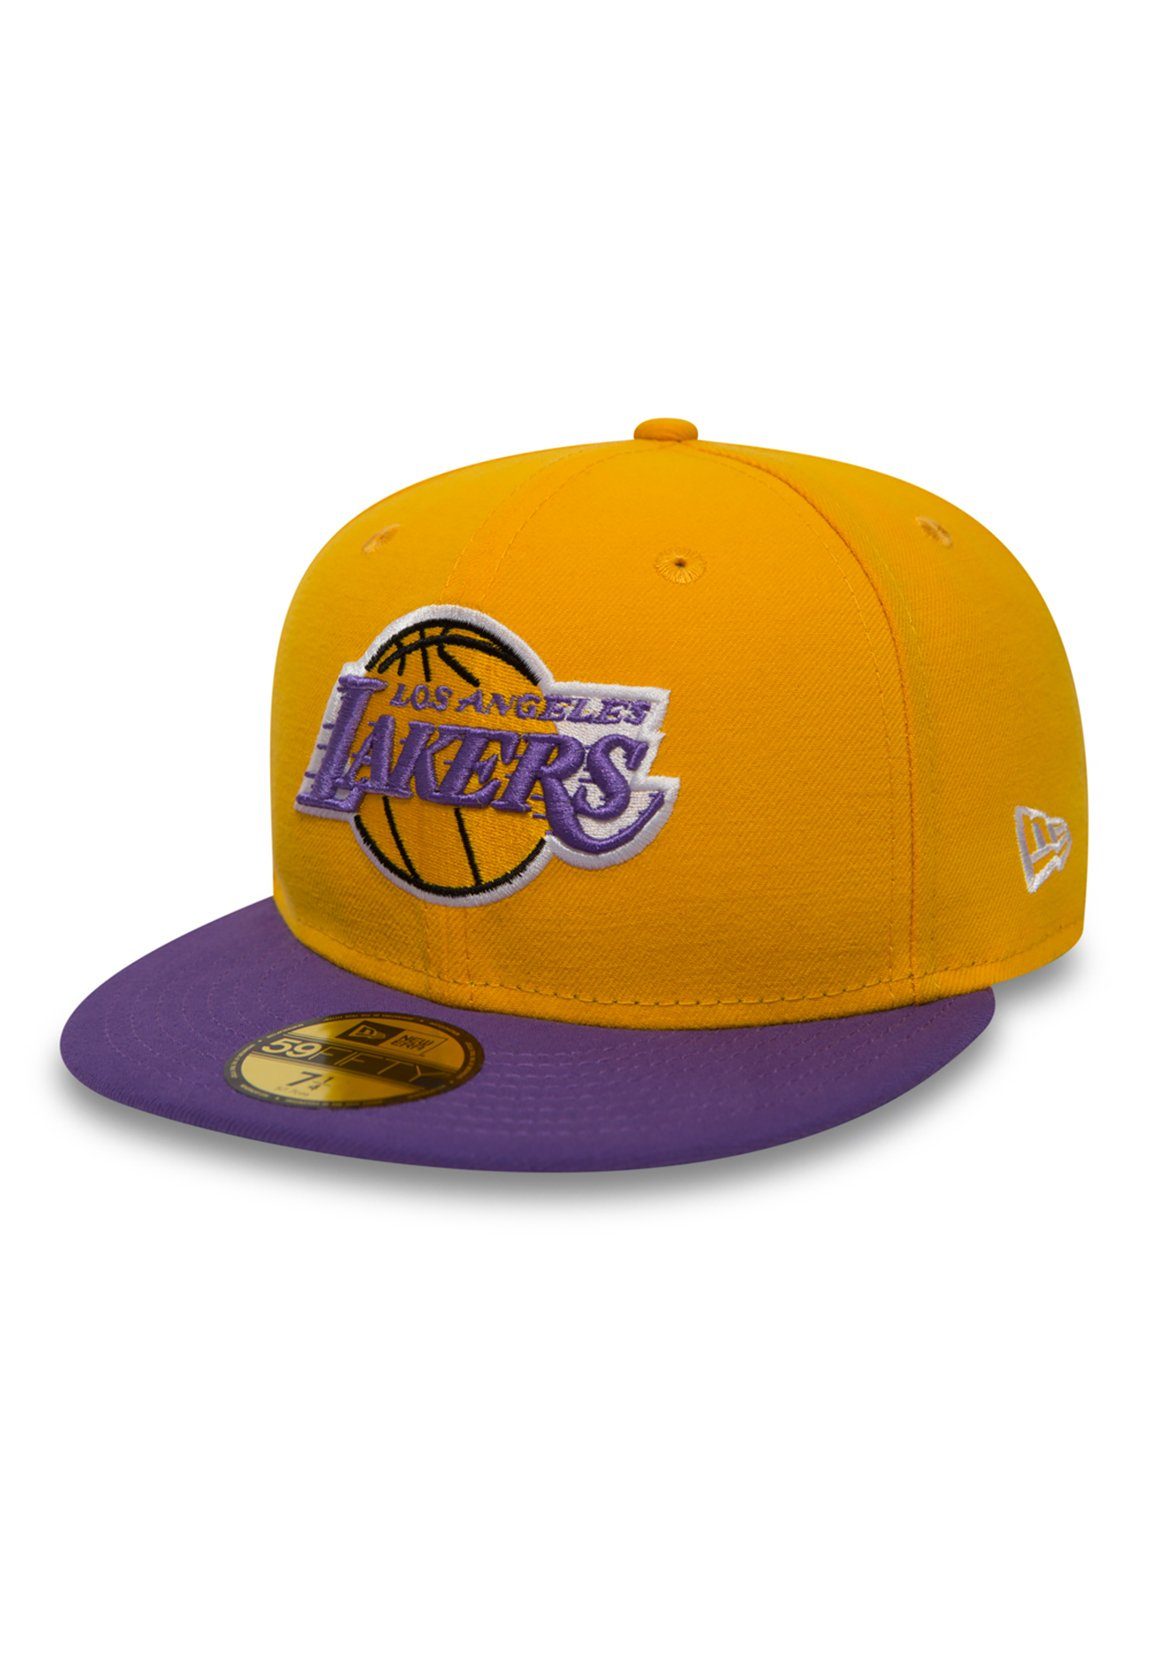 Cap Era gelb Era New - New Cap LAKERS Yellow-Purple 59Fiftys - Baseball LA